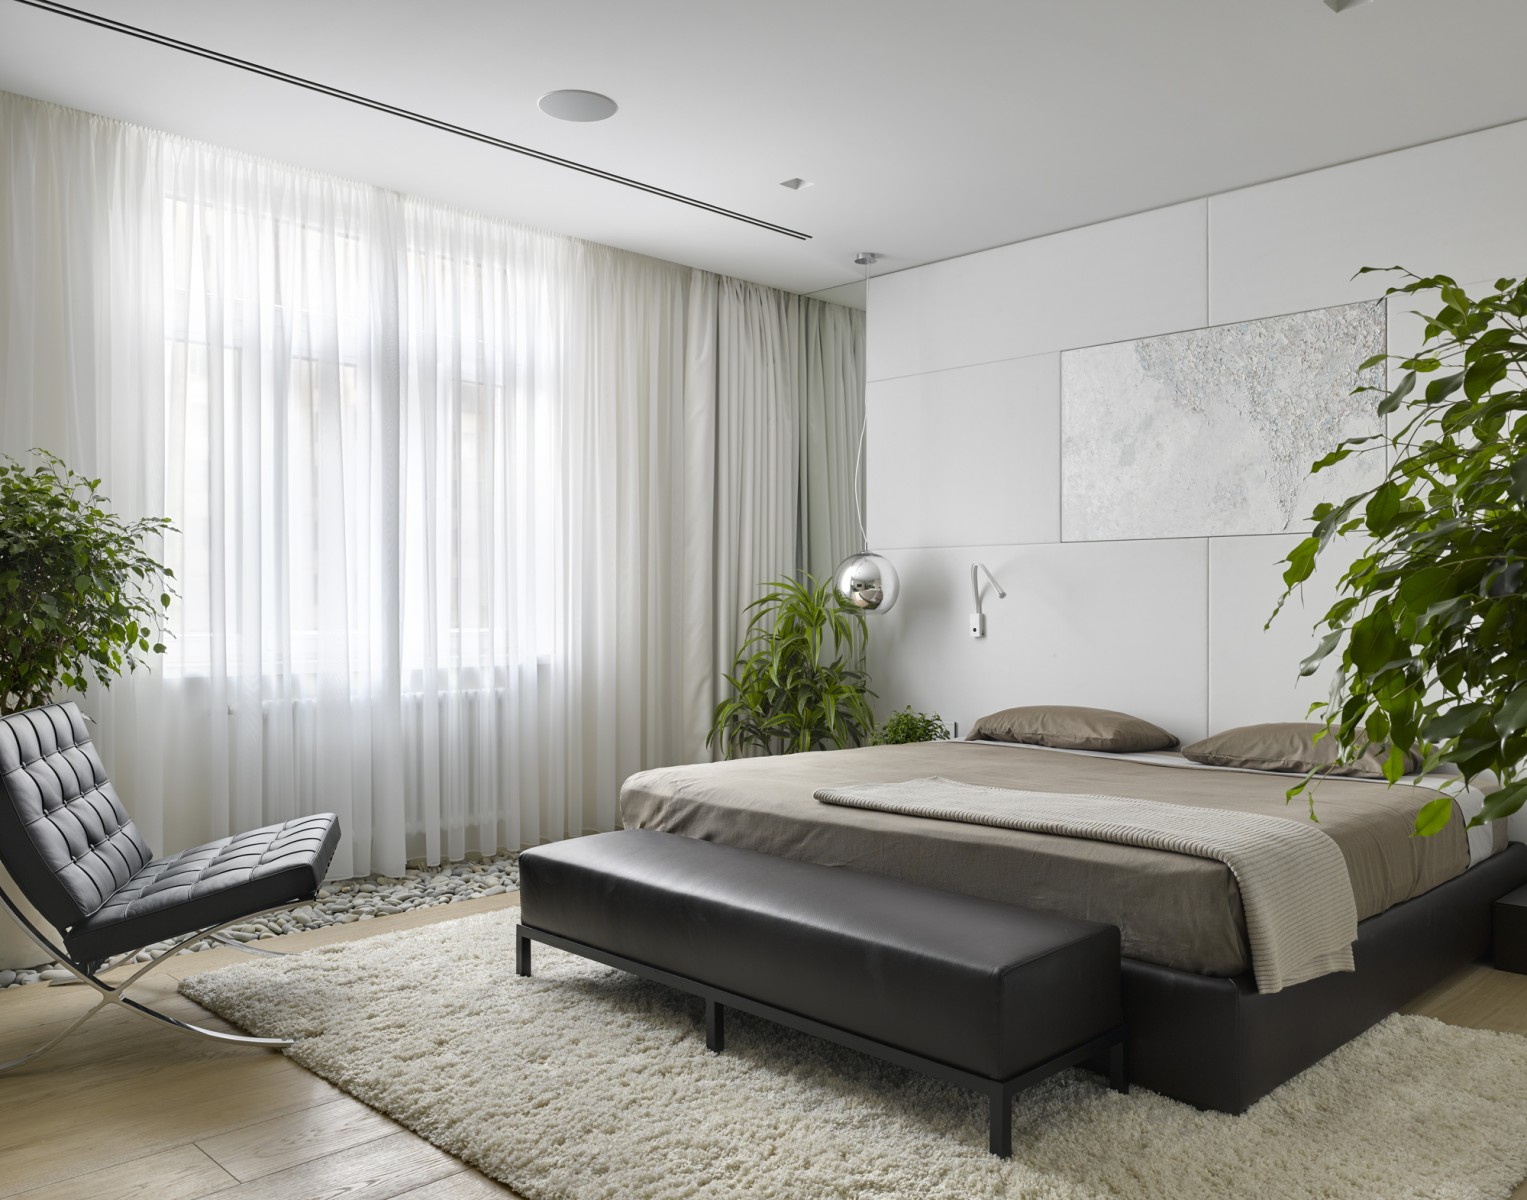 Bright small bedroom idea from Alexandra Fedorova